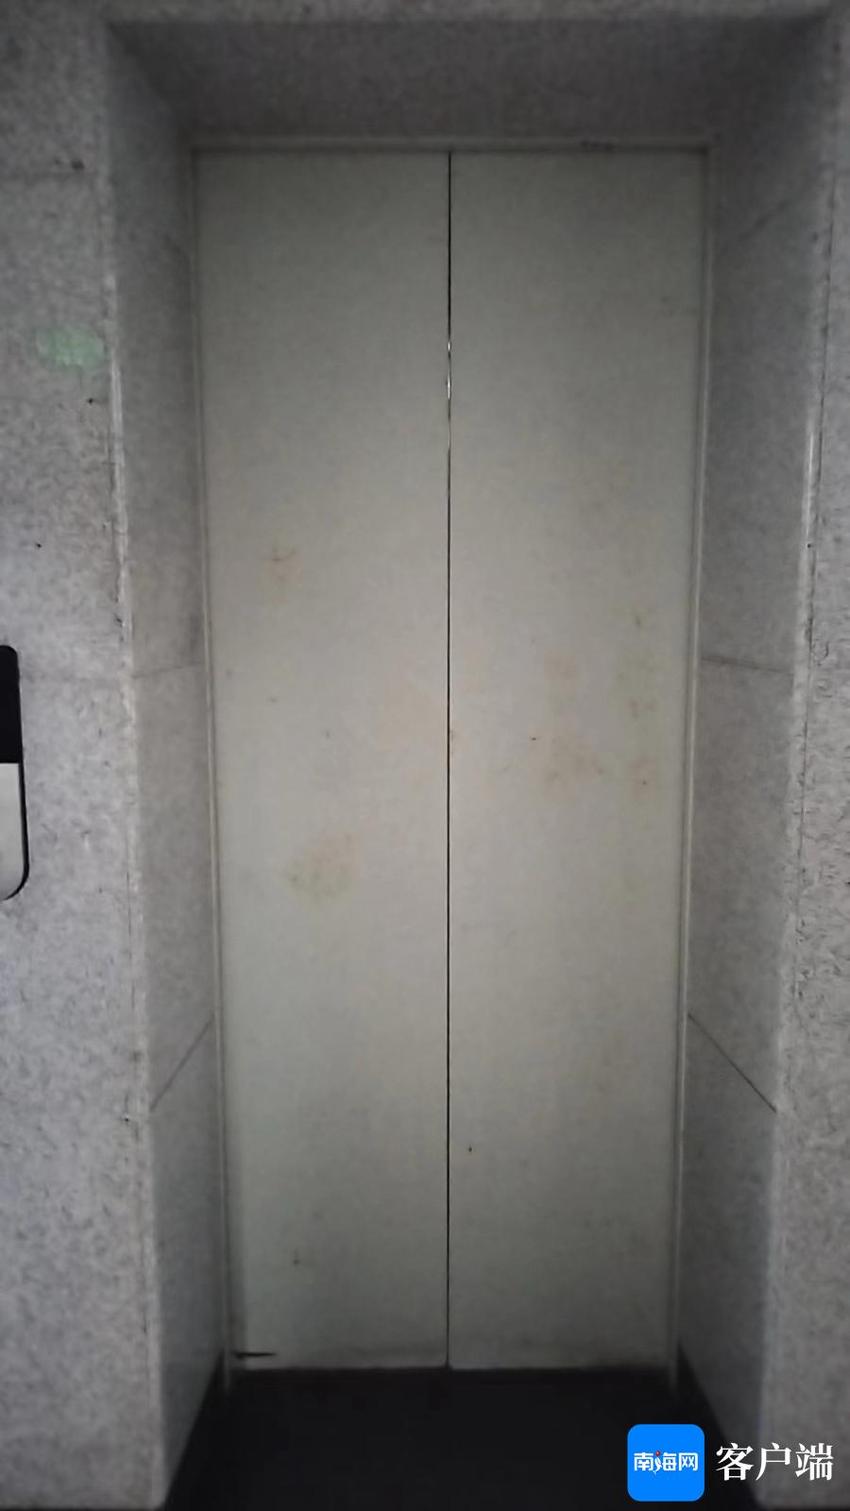 海口三林怡和园小区电梯故障频出 业主质疑物业修来修去“花冤枉钱”